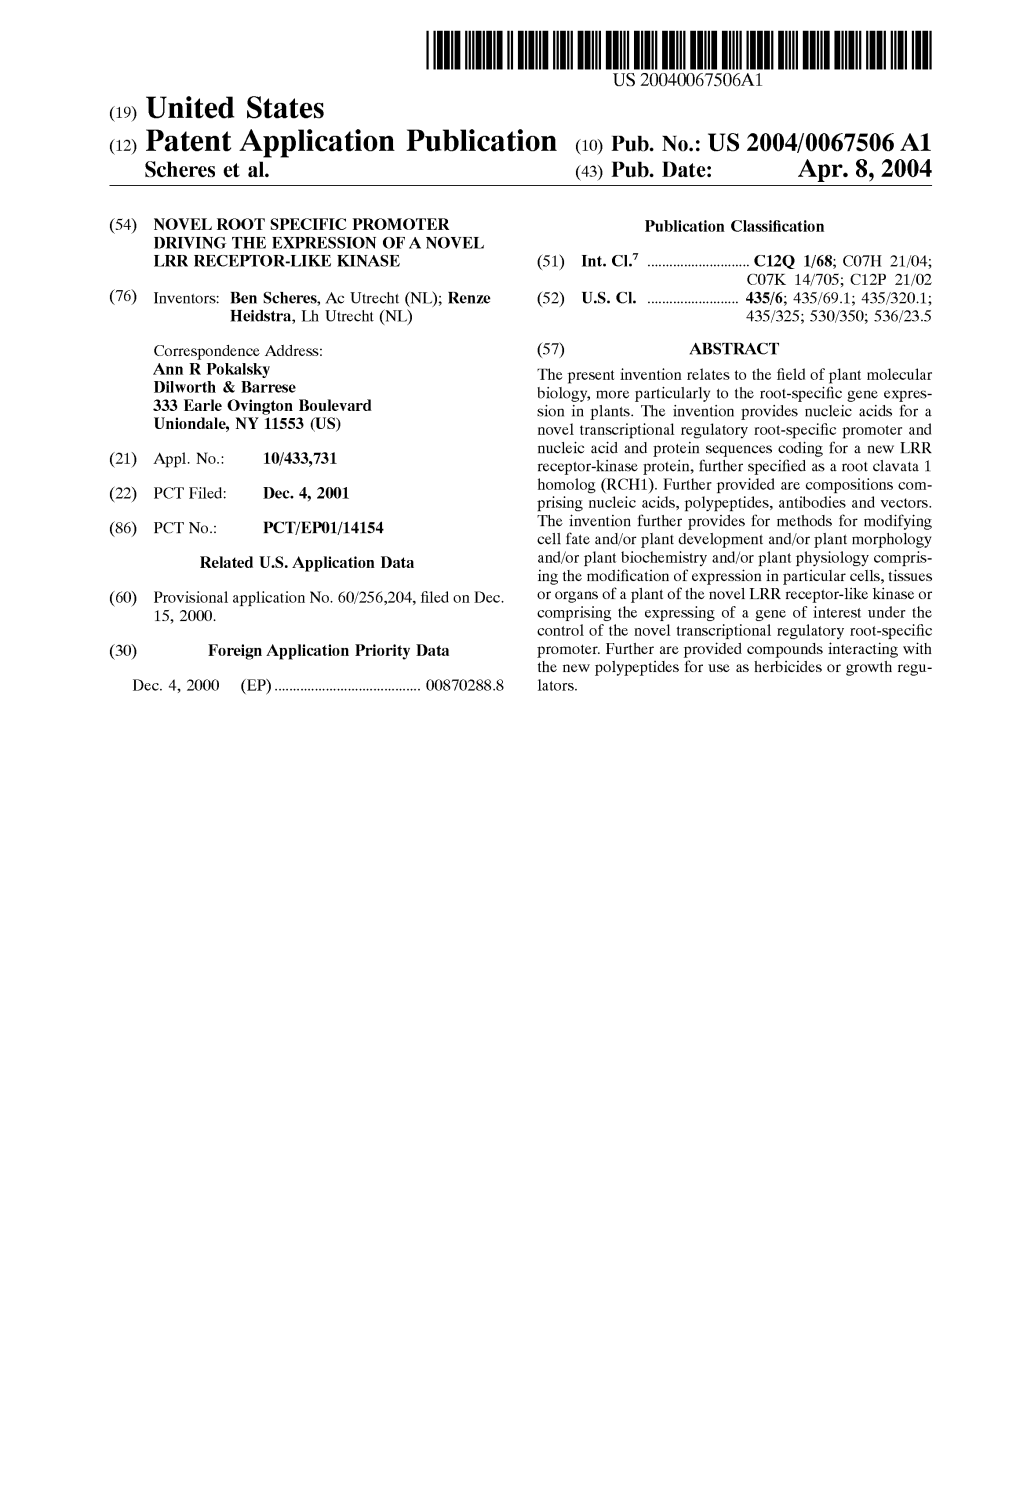 (12) Patent Application Publication (10) Pub. No.: US 2004/0067506 A1 Scheres Et Al